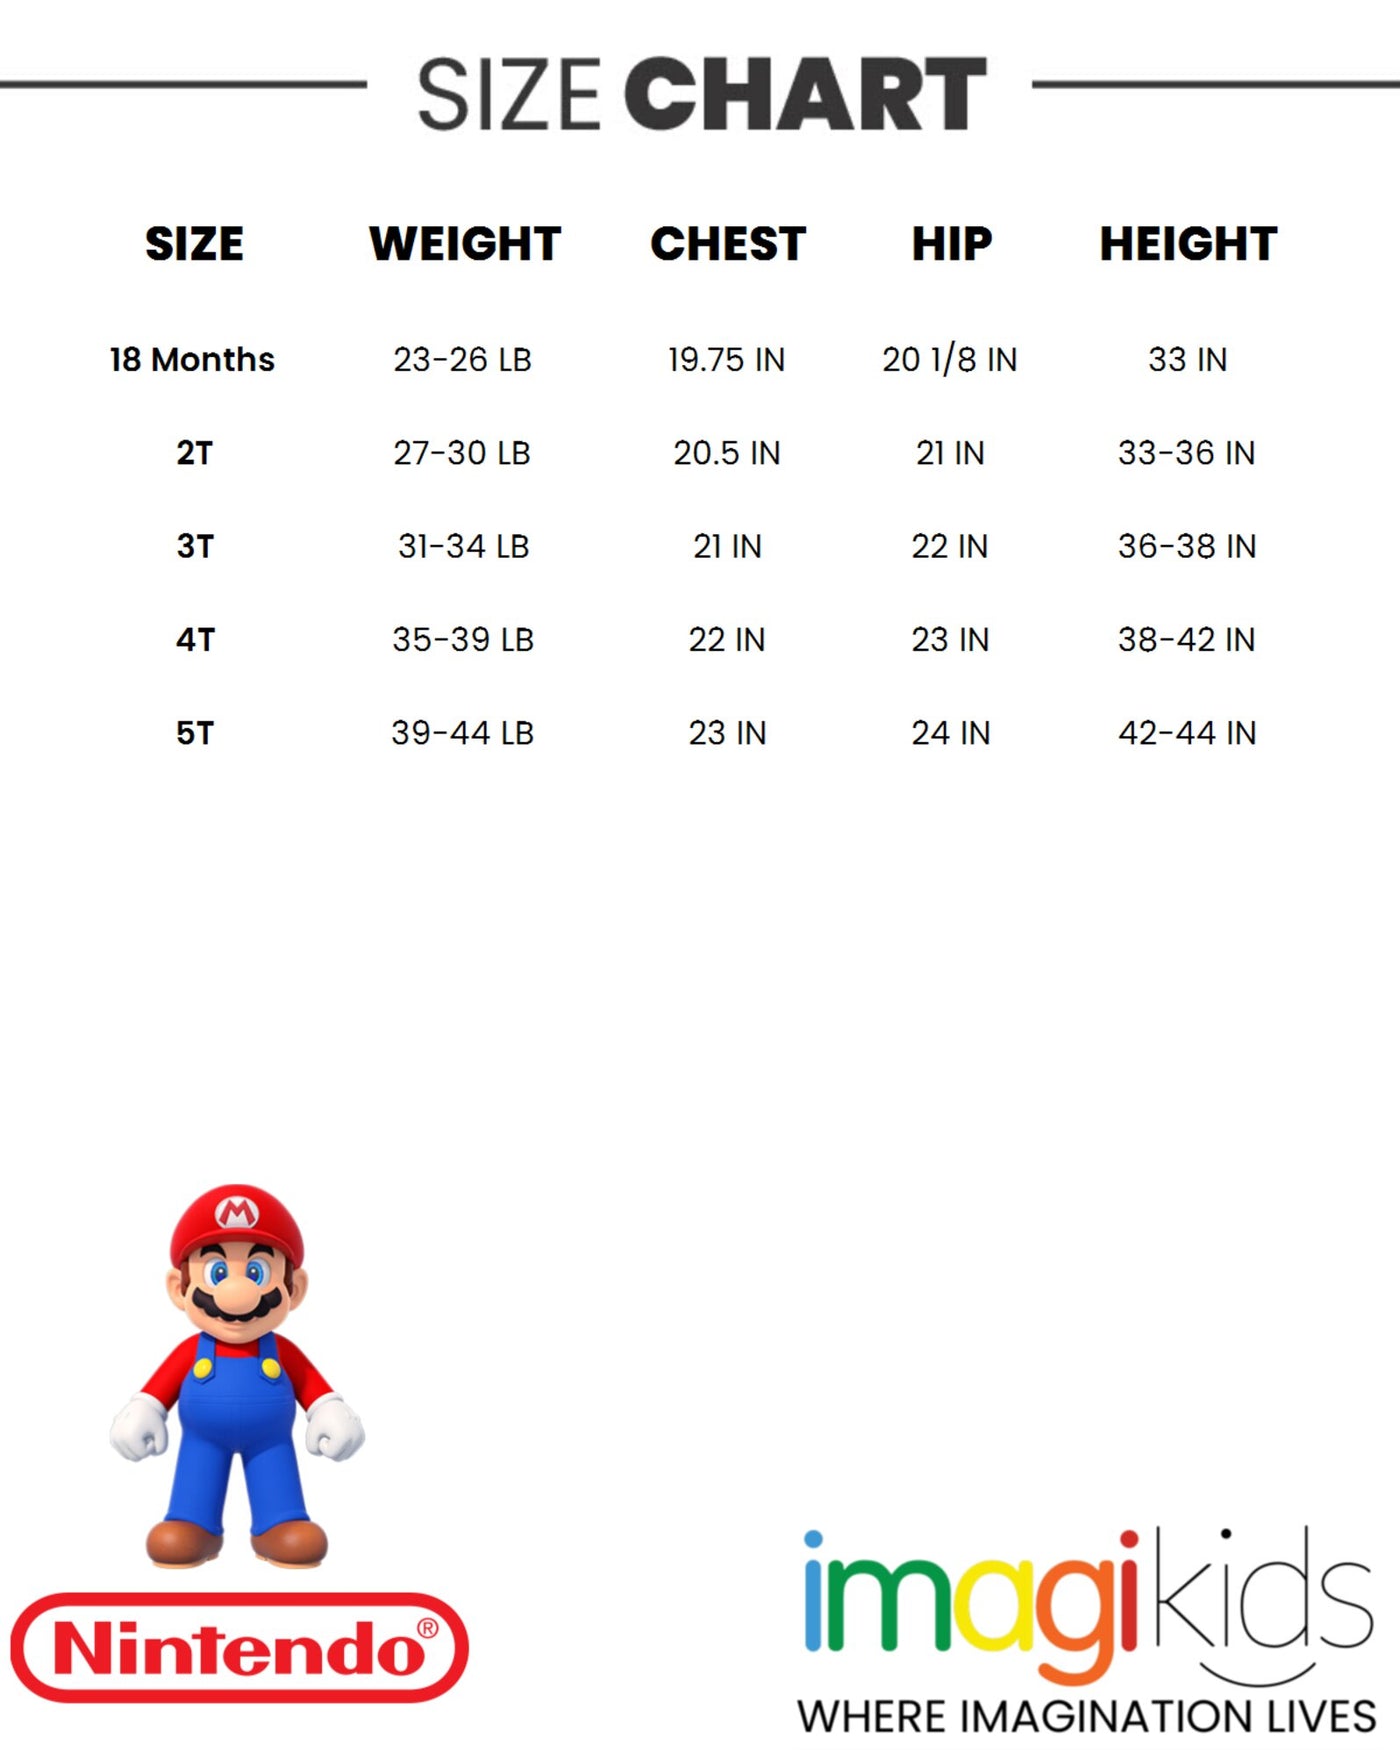 Conjunto de camiseta gráfica y shorts de Mario